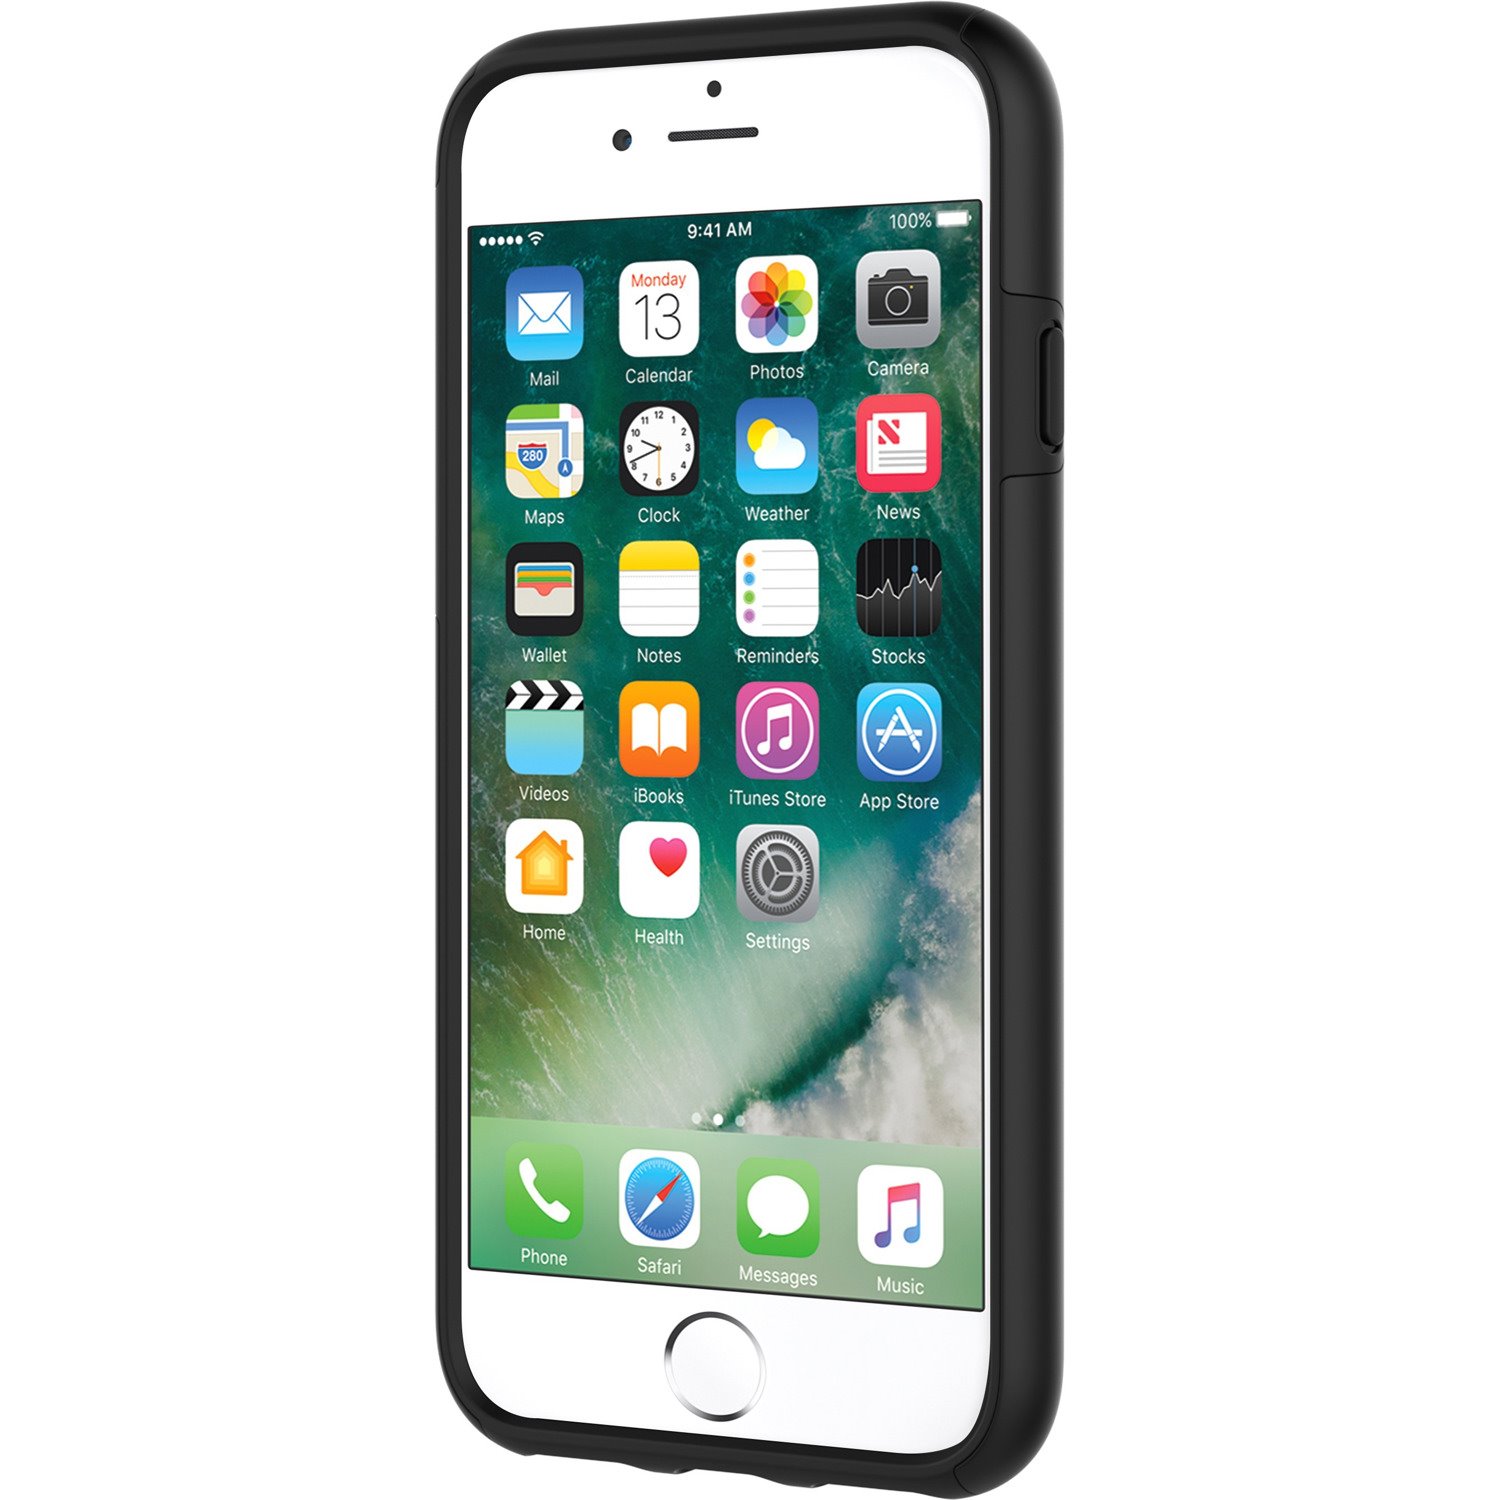 Incipio DualPro Case for Apple iPhone 6, iPhone 6s, iPhone 7 Smartphone - Black